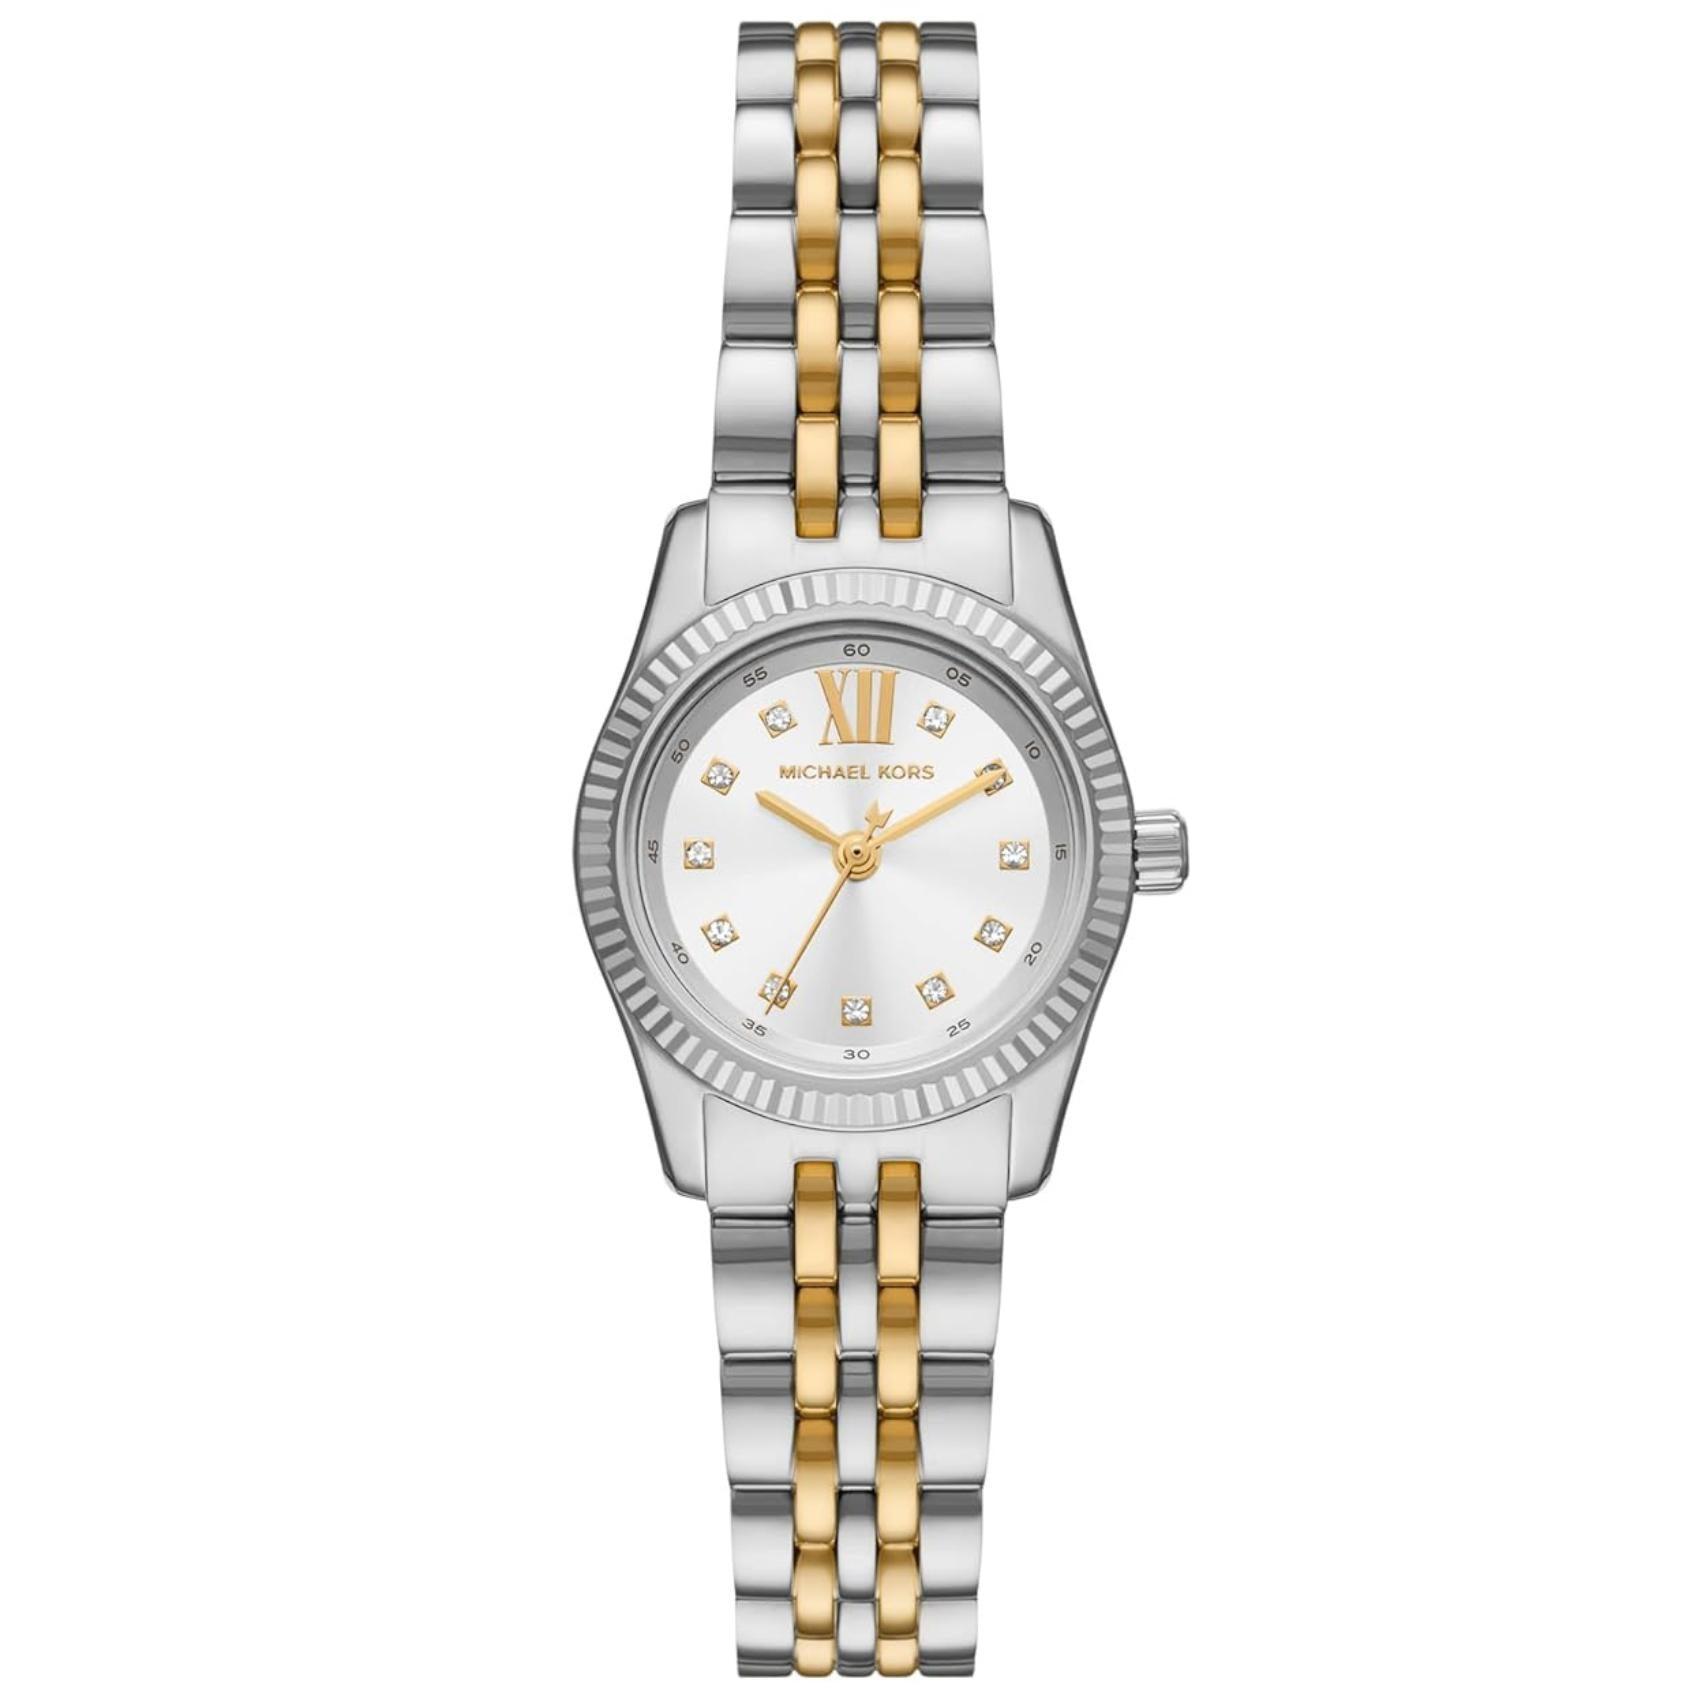 Γυναικείο ρολόι Michael Kors Lexington MK4740 με δίχρωμο ασημί-χρυσό ατσάλινο μπρασελέ, στρογγυλό άσπρο καντράν με ημερομηνία και ζιργκόν και στεφάνι 26mm.